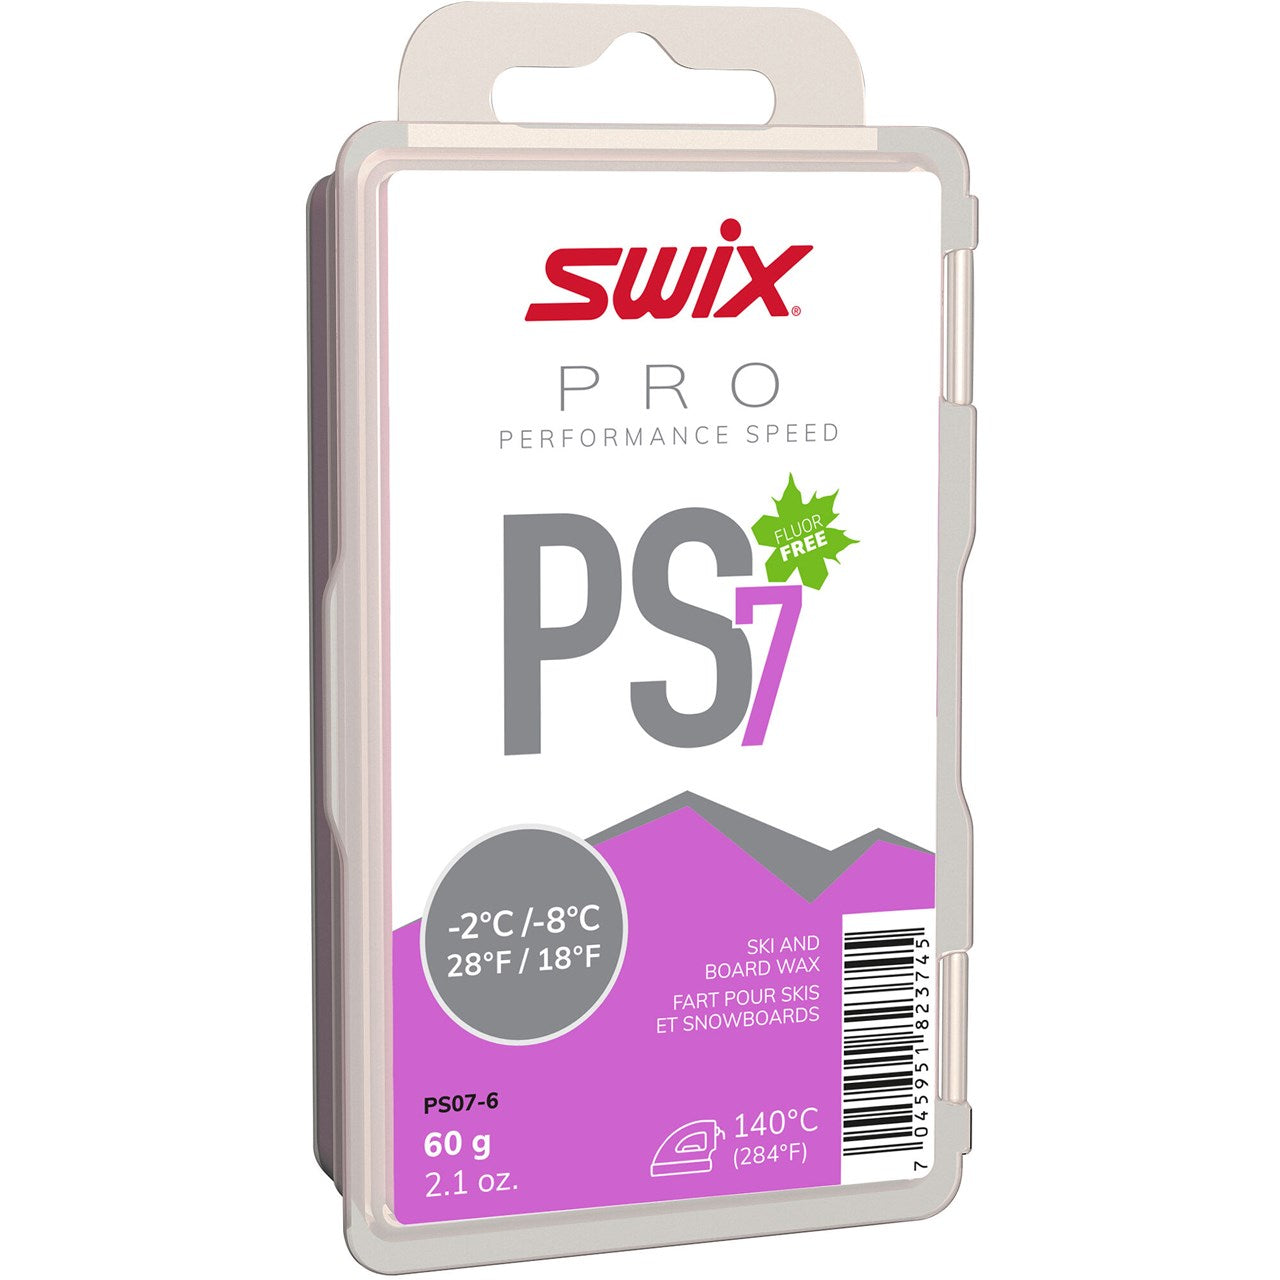 SWIX PS7 VIOLET, -2C/-8C, 60G